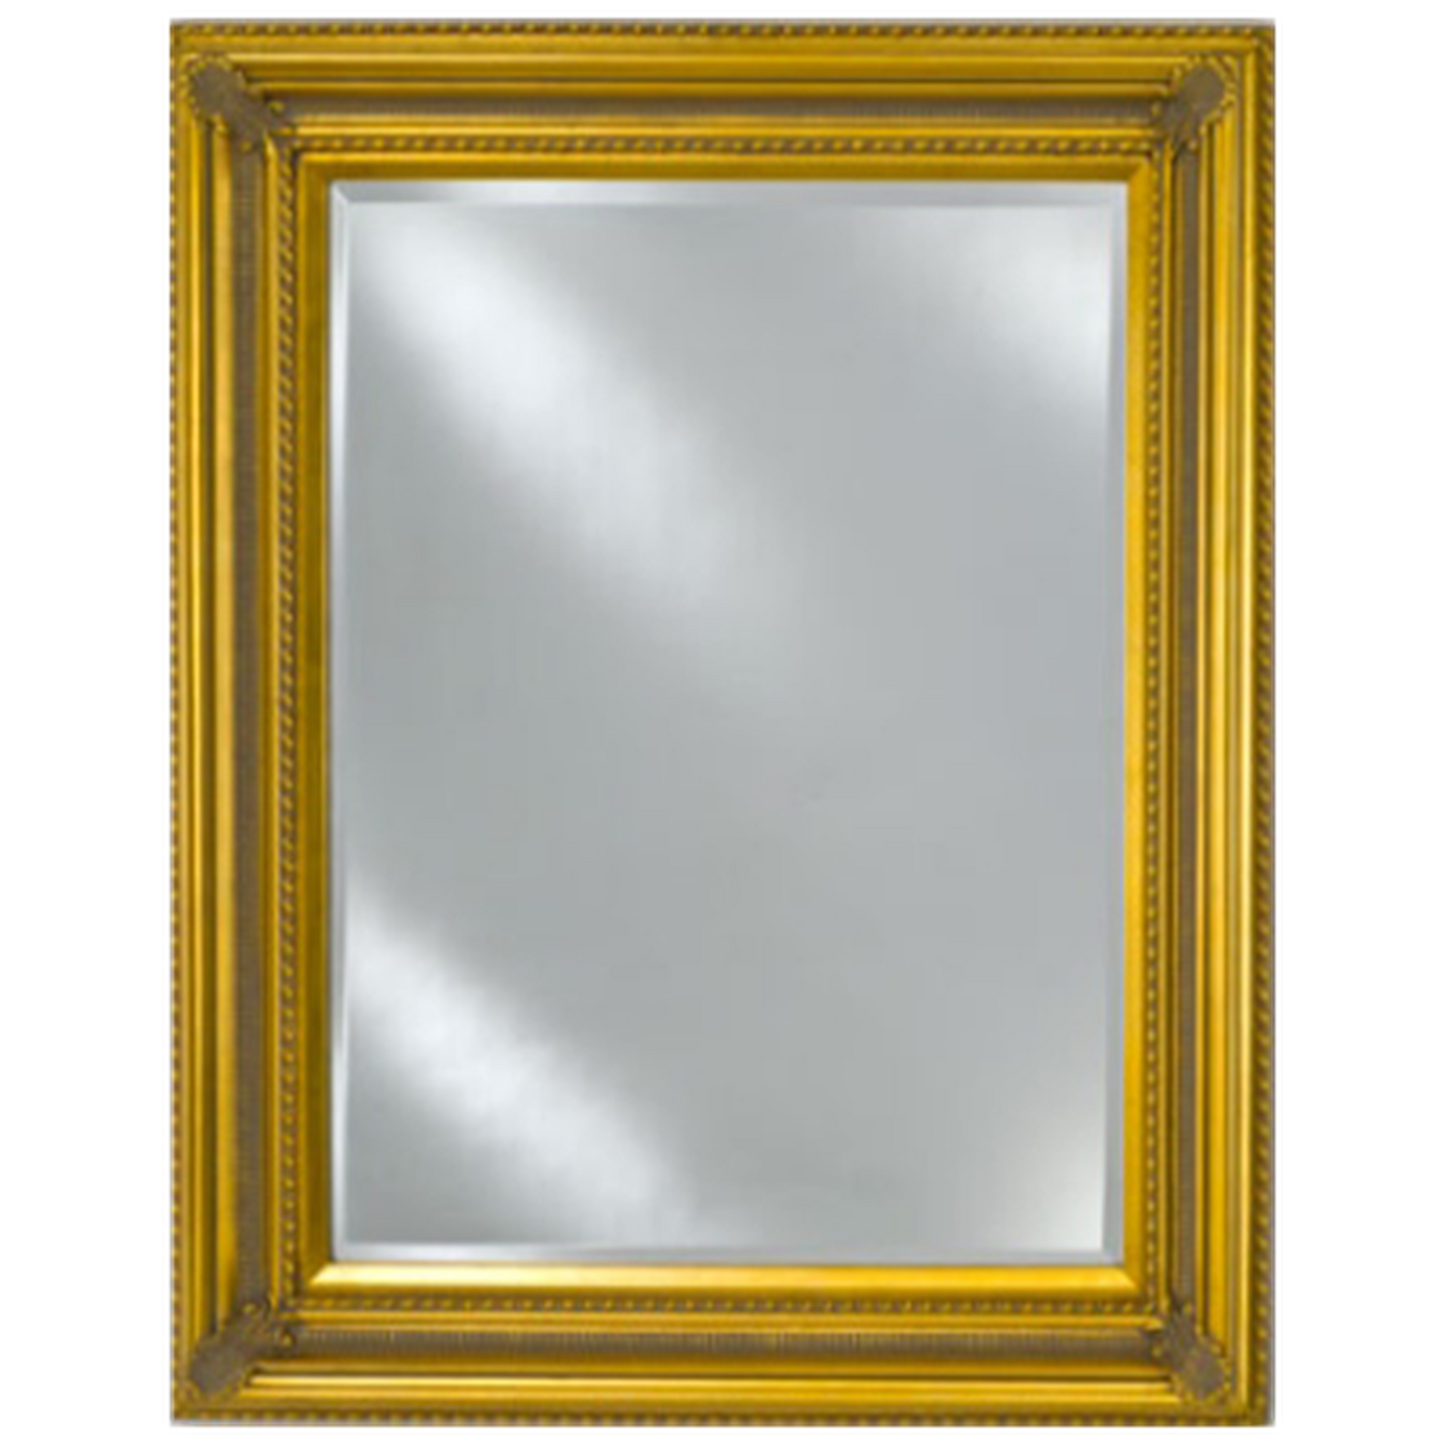 Afina Estate 51" x 40" Antique Gold Distinctive Wood Framed With 1" Bevel Mirror